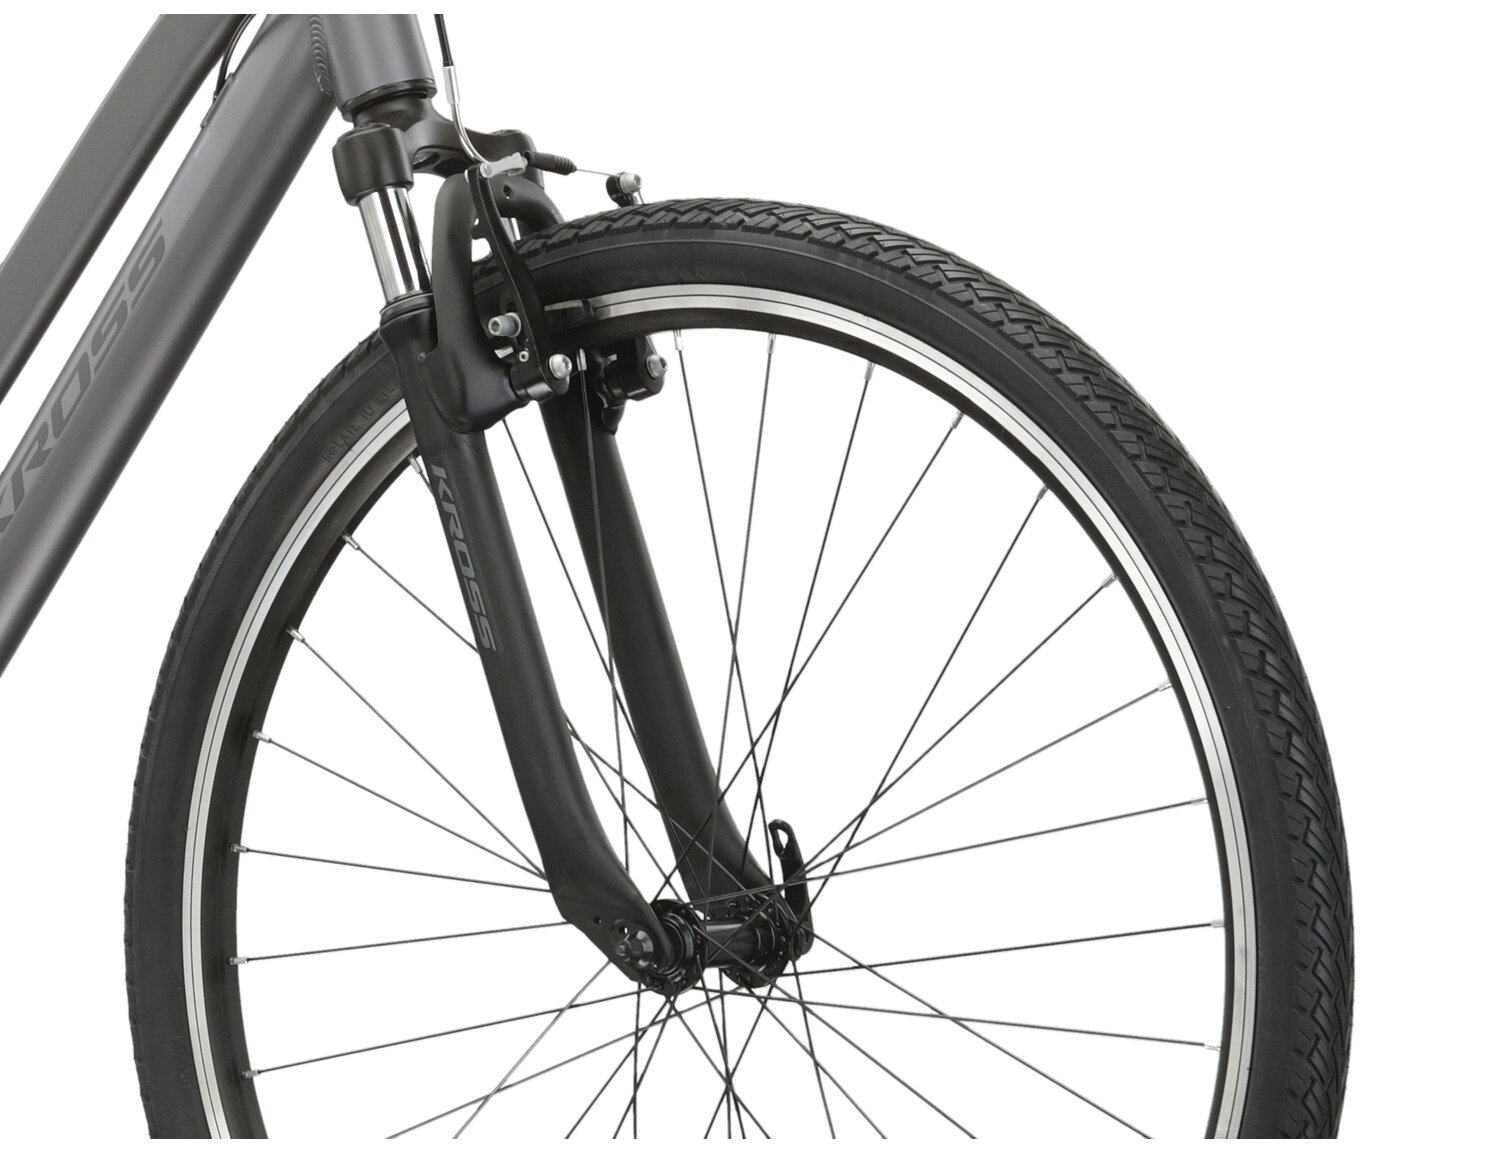 Aluminowa rama, amortyzowany widelec oraz opony Wanda w rowerze crossowym damskim KROSS Evado 2.0 